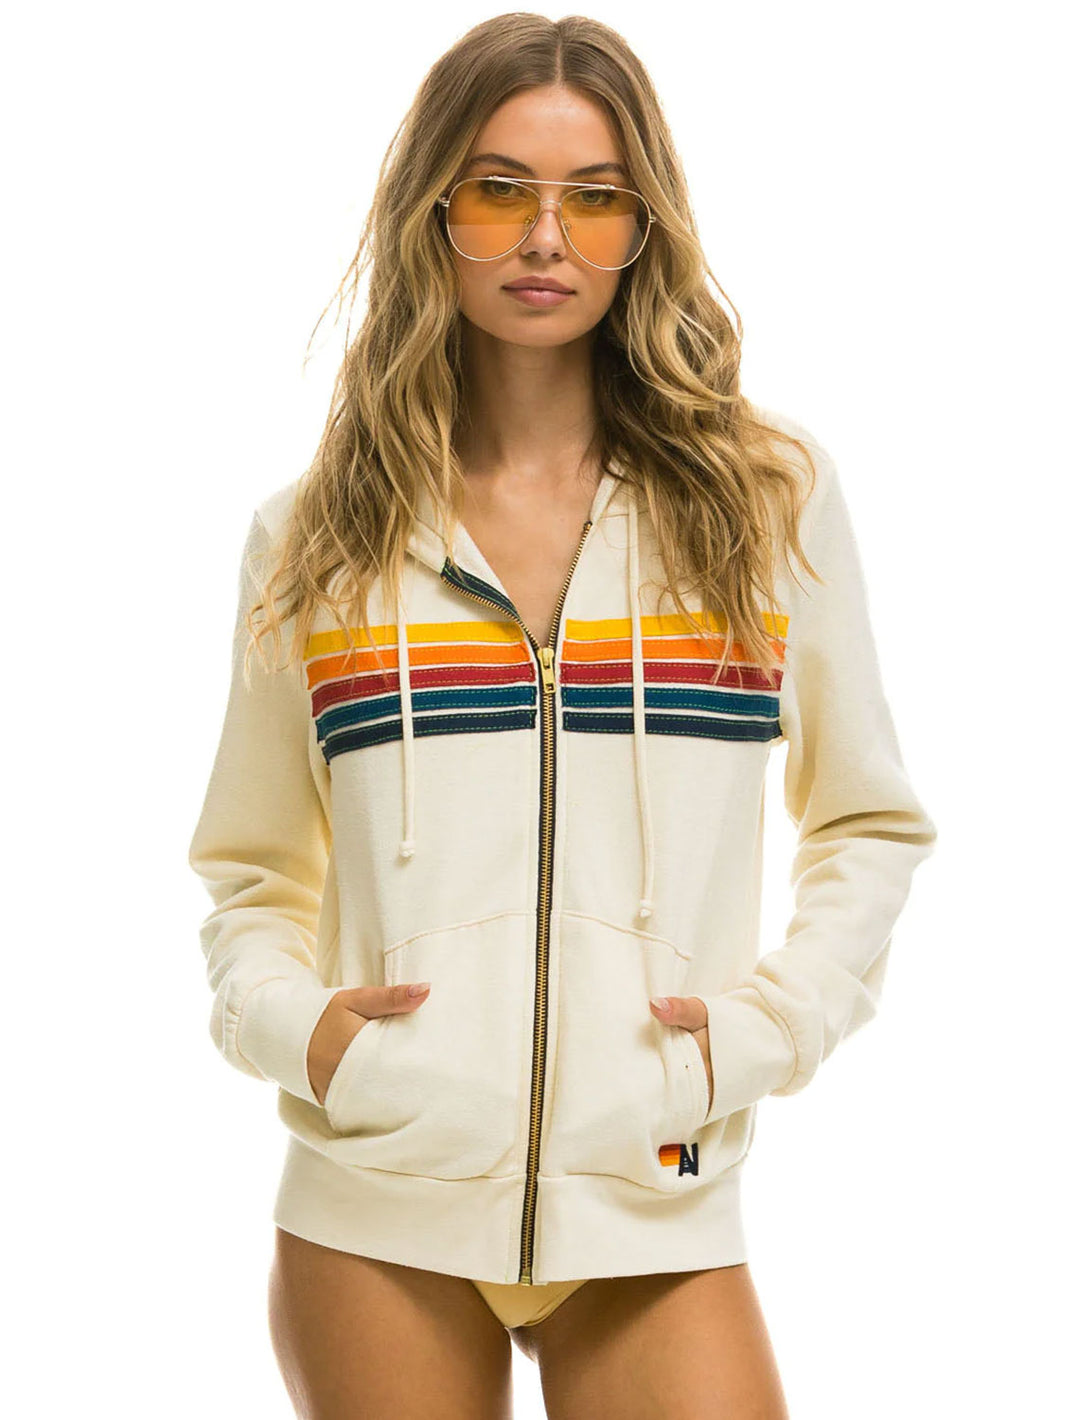 Model wearing Aviator Nation's 5 stripe zip hoodie in vintage white.